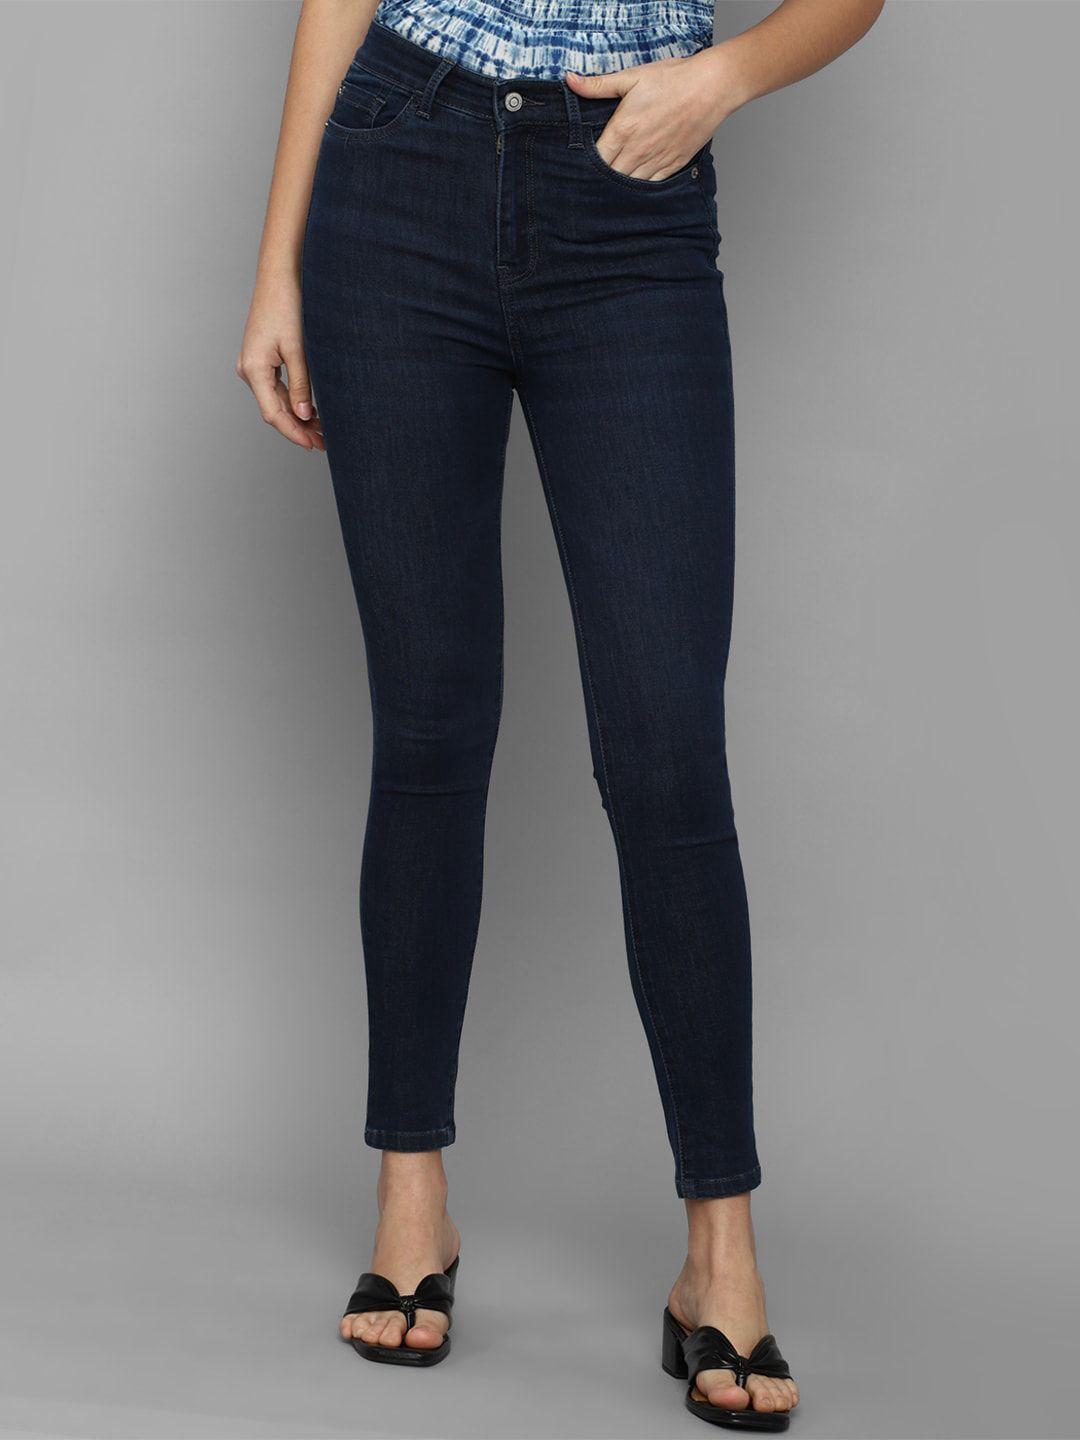 allen-solly-woman-women-navy-blue-skinny-fit-jeans